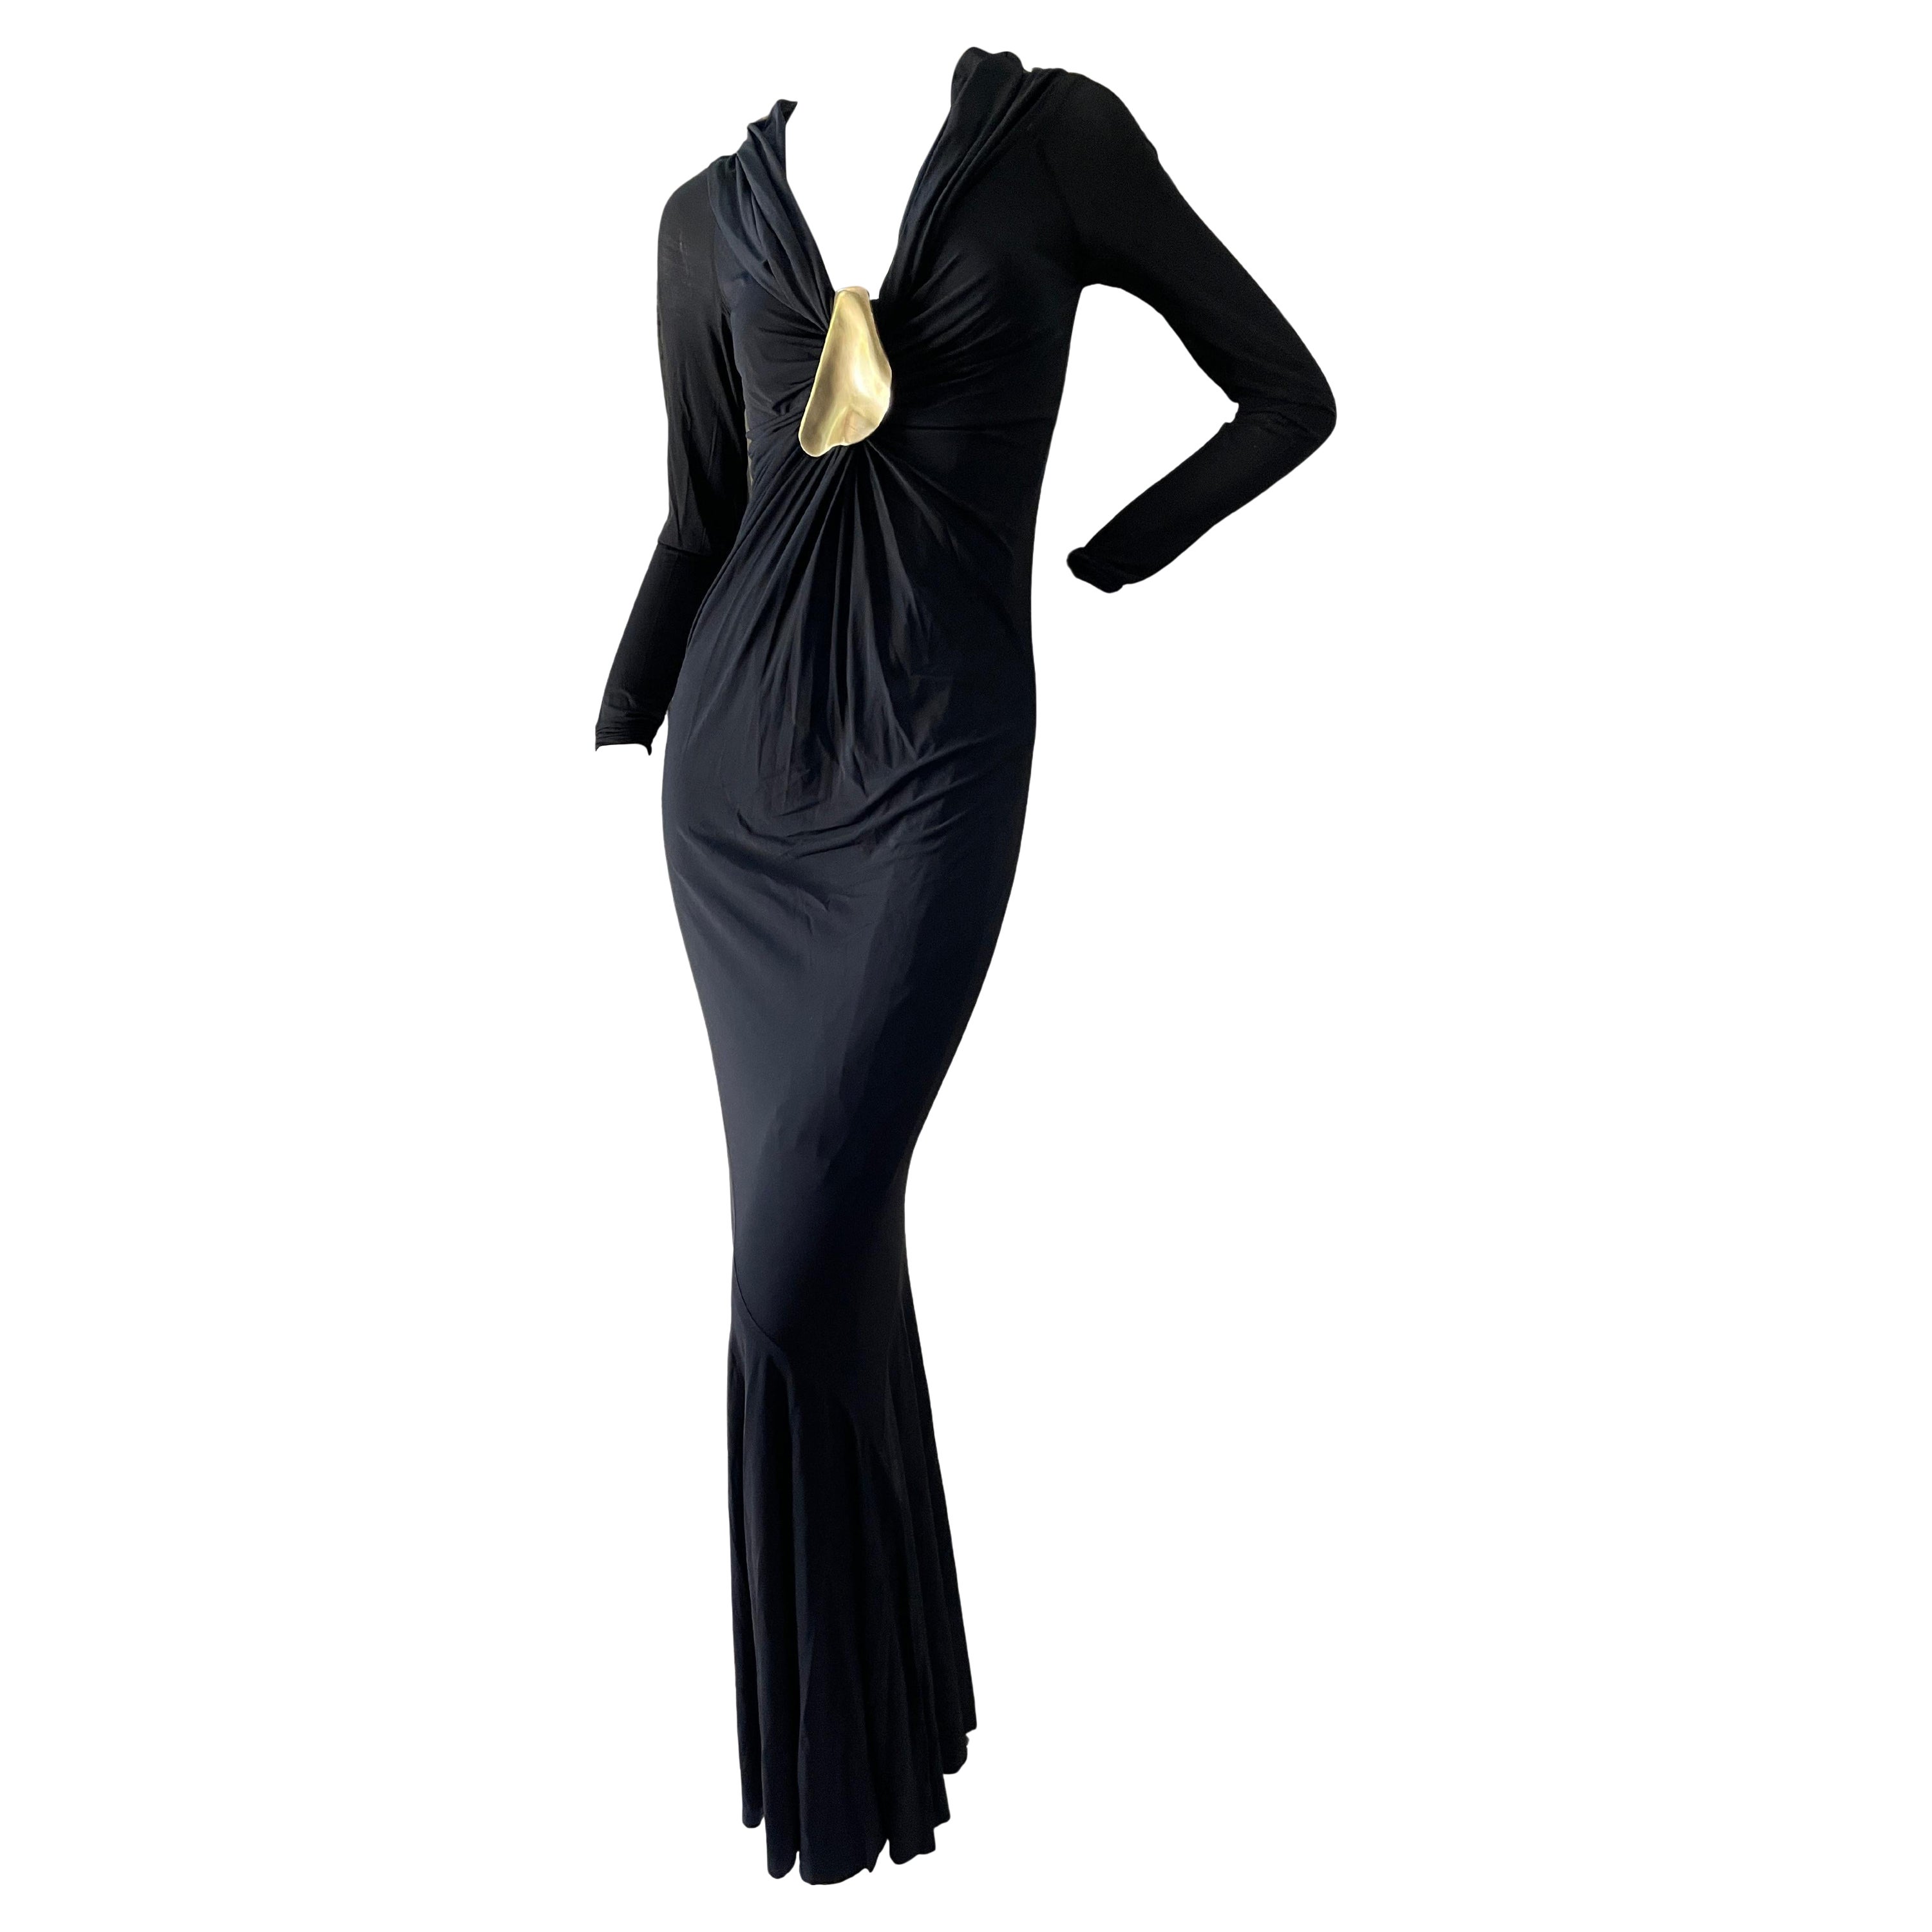 Donna Karan Vintage Black Dress w Plunging Neckline & Robert Lee Morris Ornament For Sale